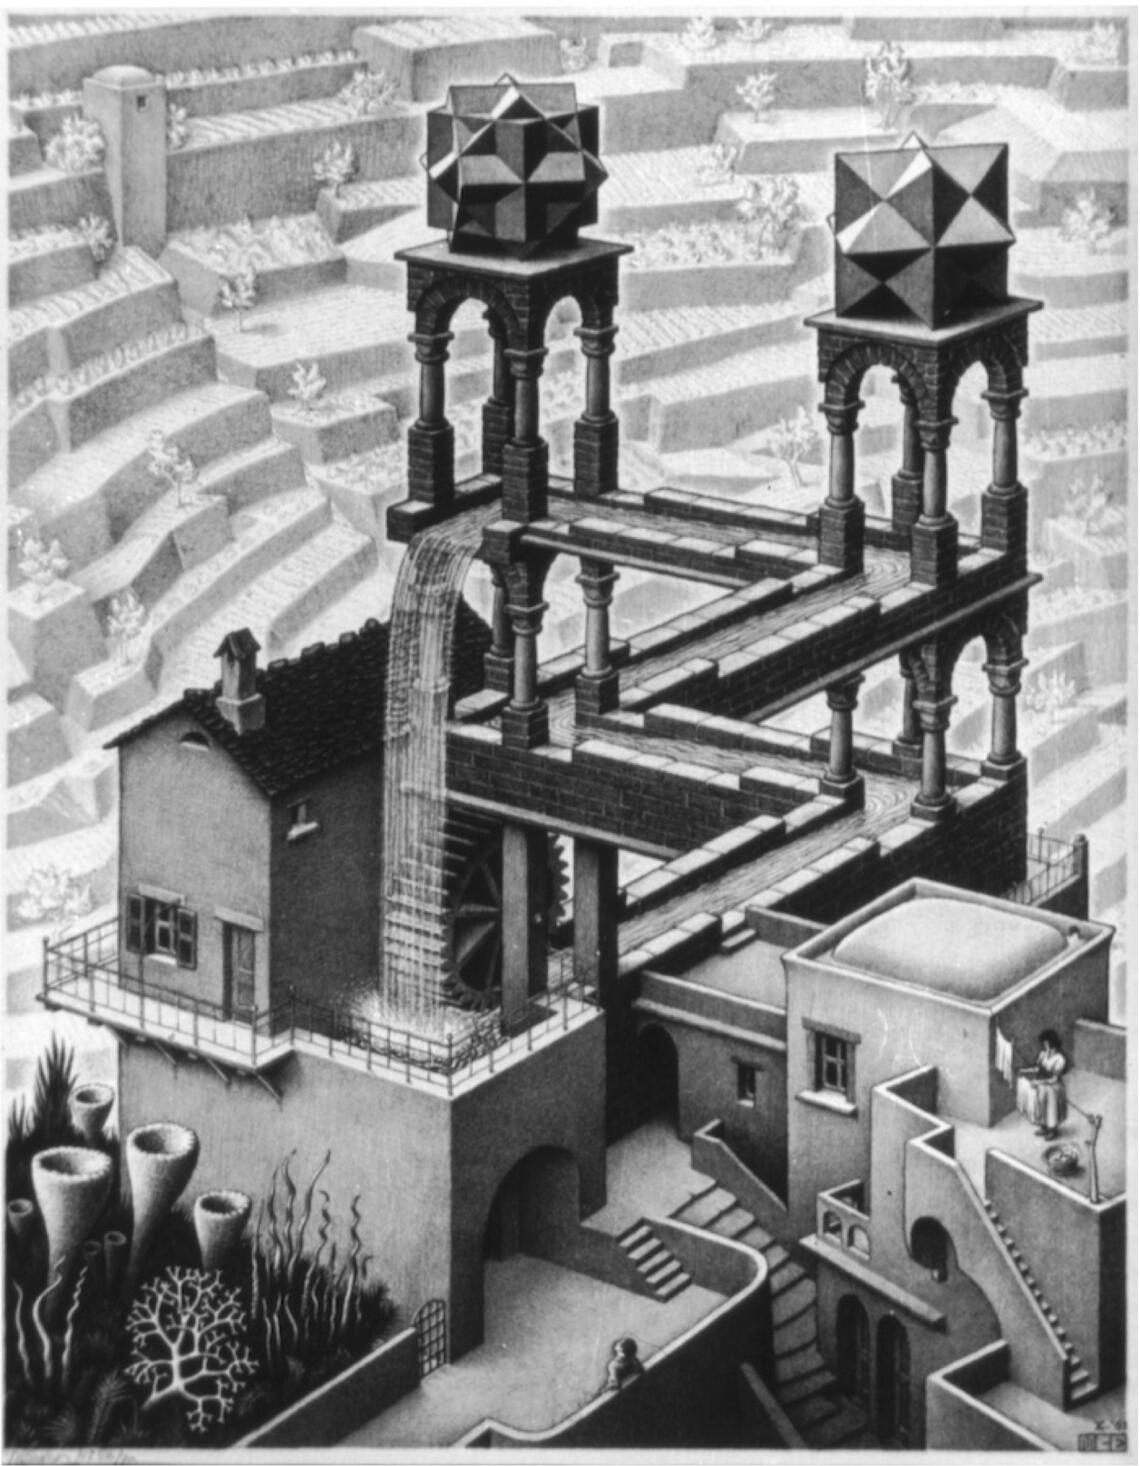 M.C. Escher's Waterfall lithograph. 